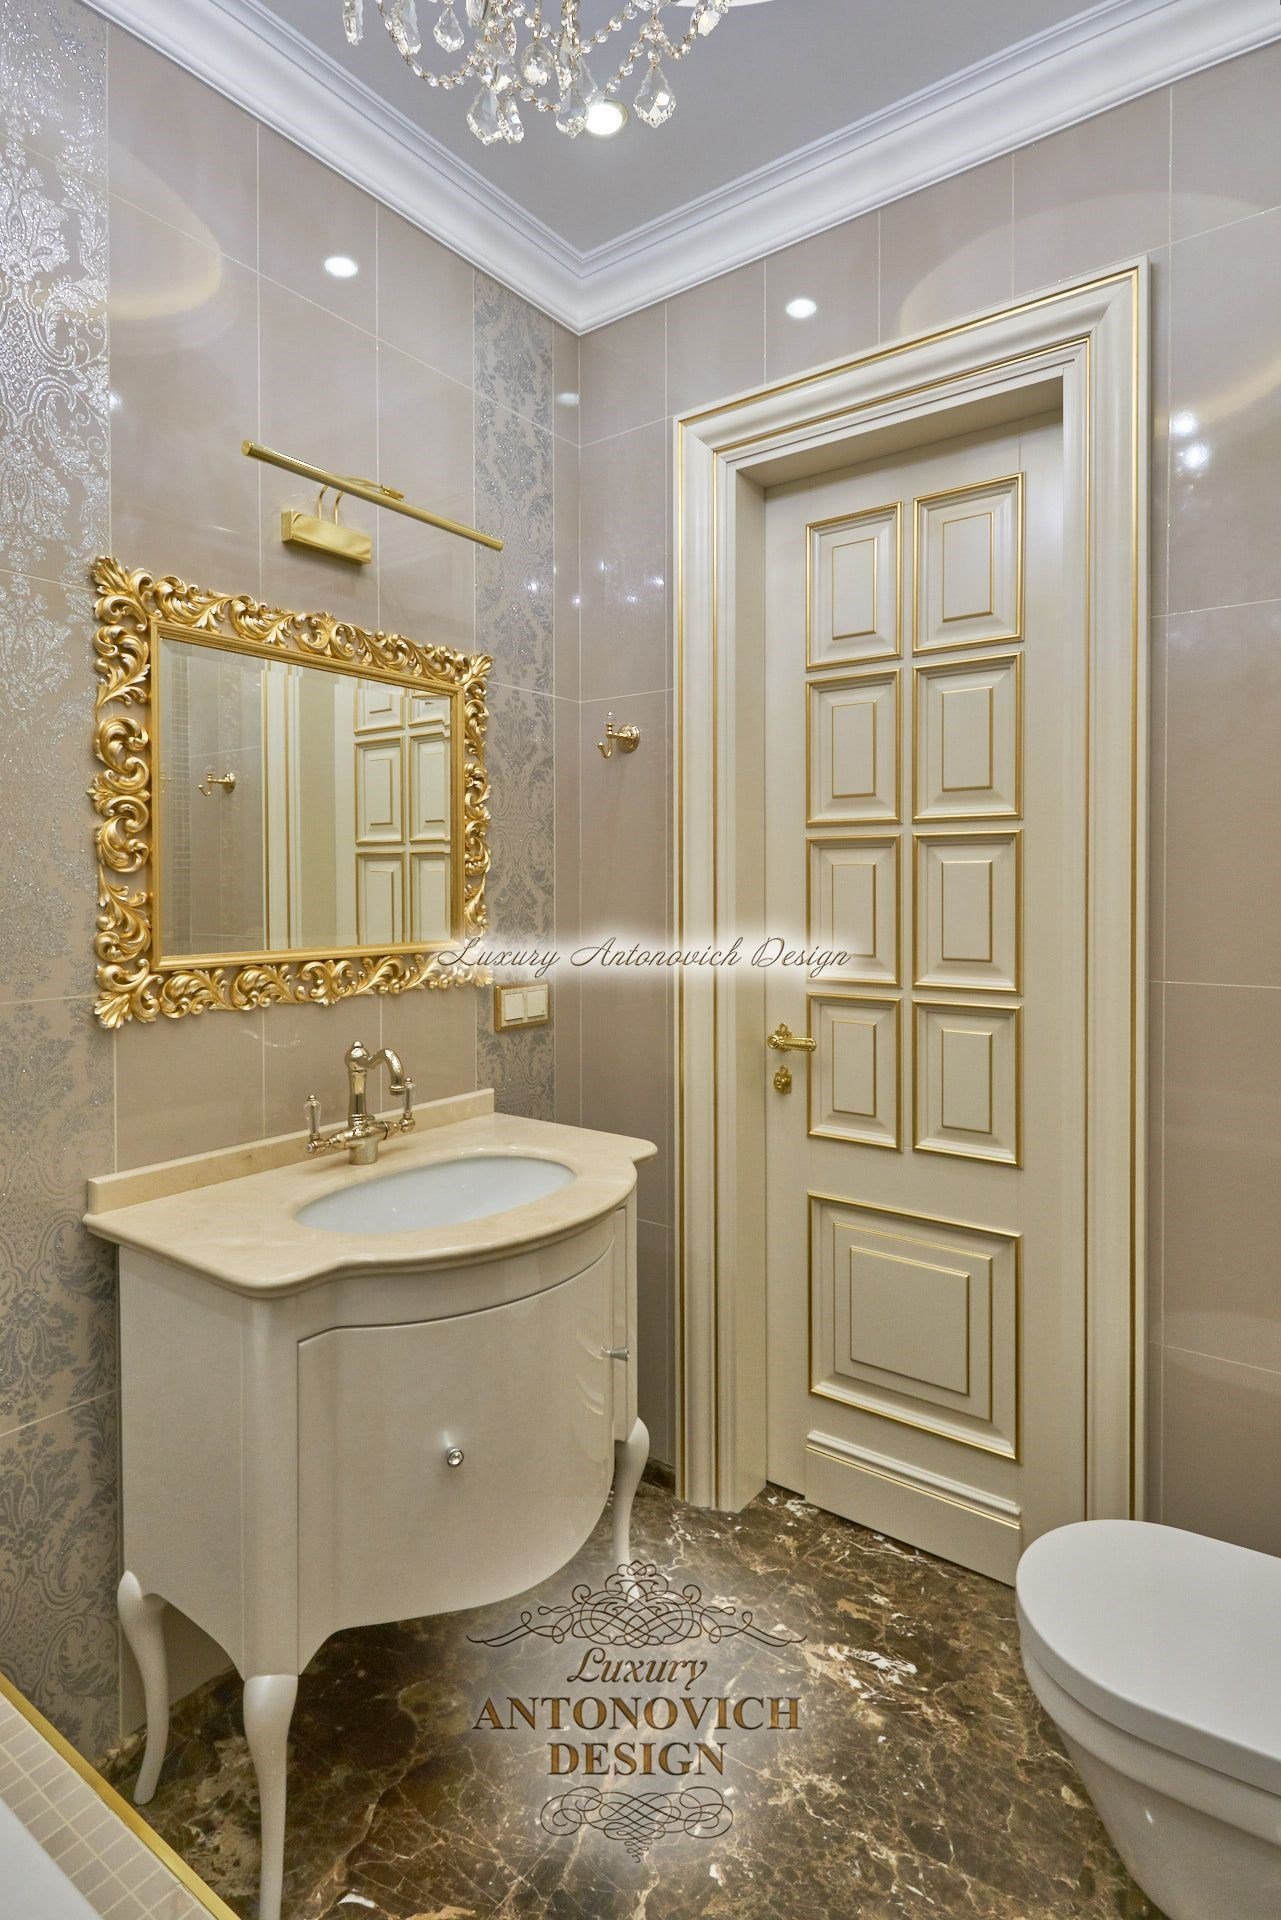 Респектабельный интерьер ванной комнаты в классическом стиле